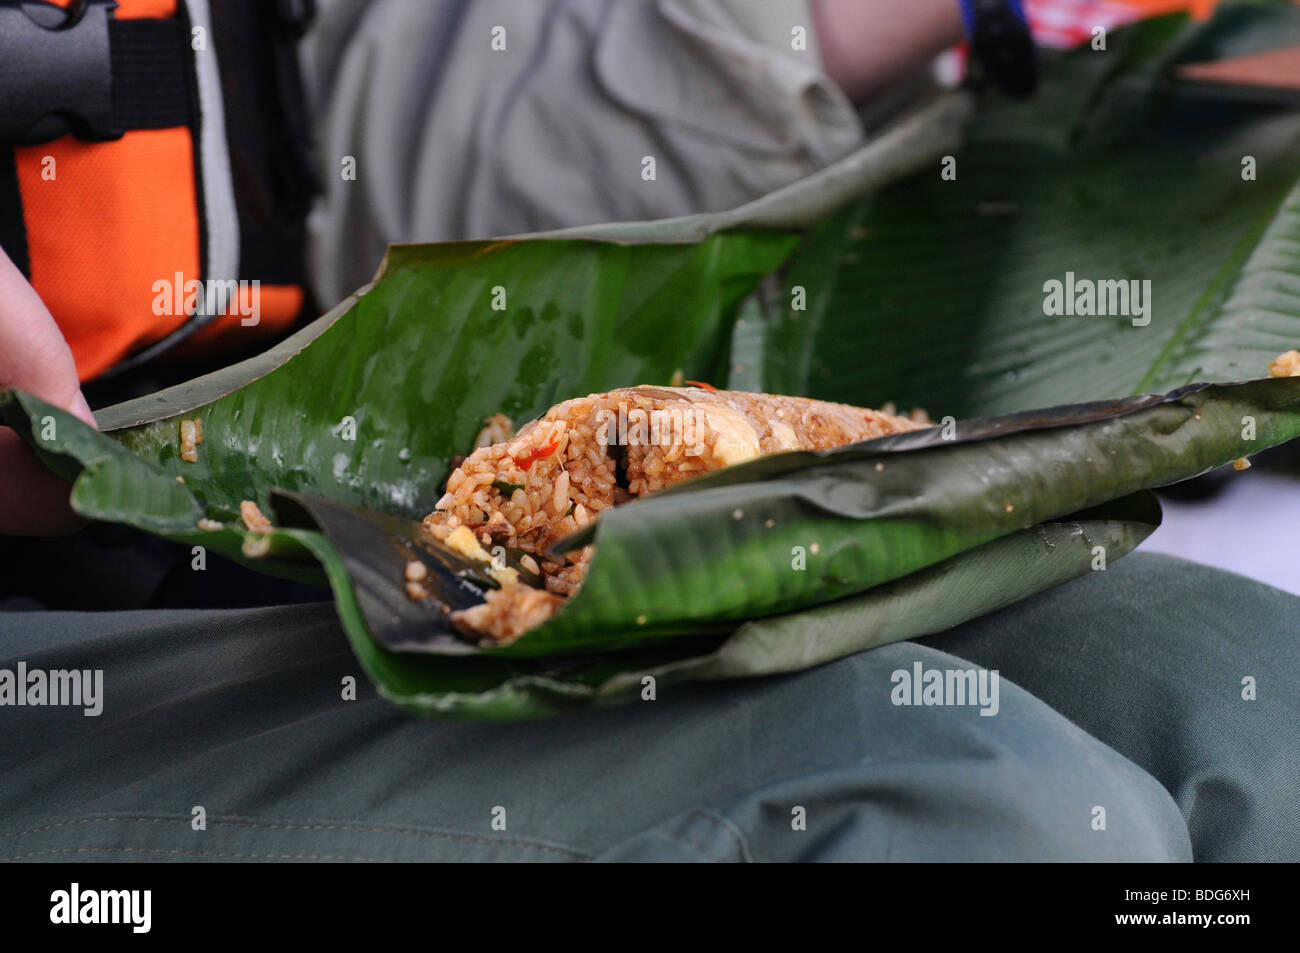 La viande, le riz et les légumes enveloppés dans une feuille de bananier, le déjeuner, Rio Tambopata, Pérou, Amazonie, Amérique du Sud, Amérique Latine Banque D'Images